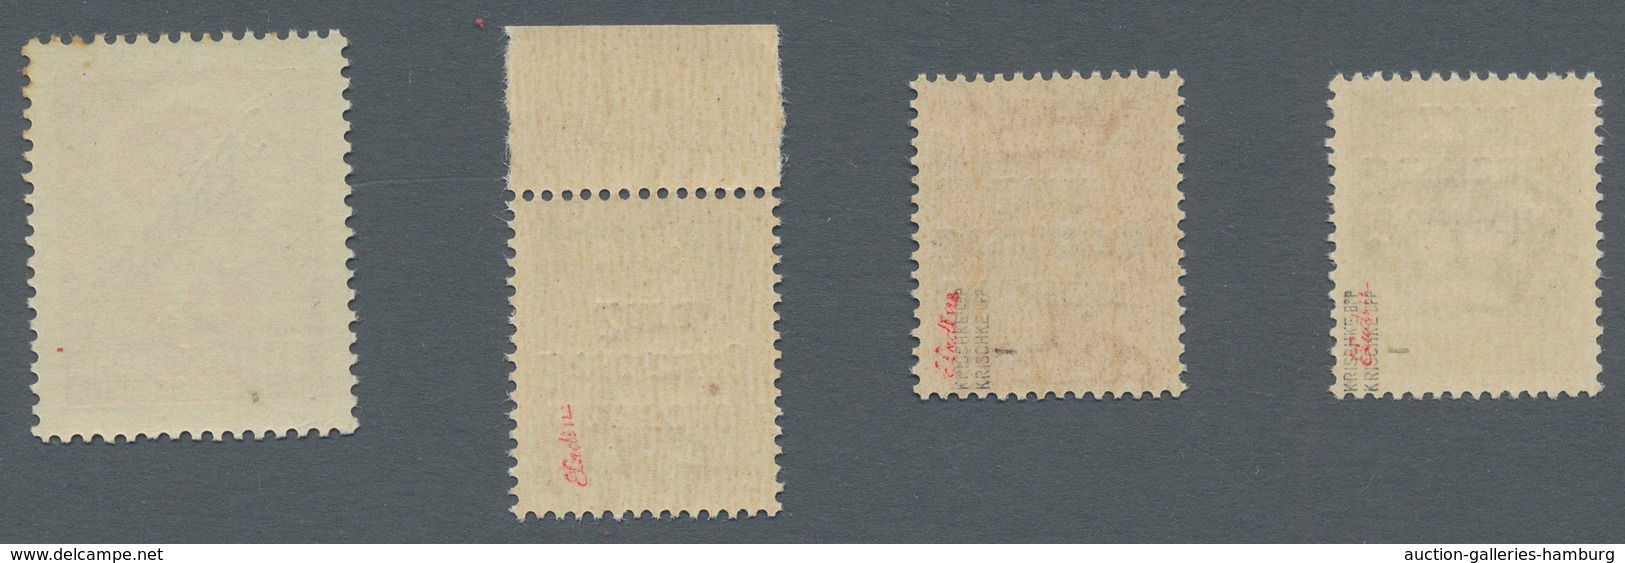 Deutsche Besetzung II. WK: 1939/1944, große postfrische Sammlung mit vielen Besonderheiten u. Abarte